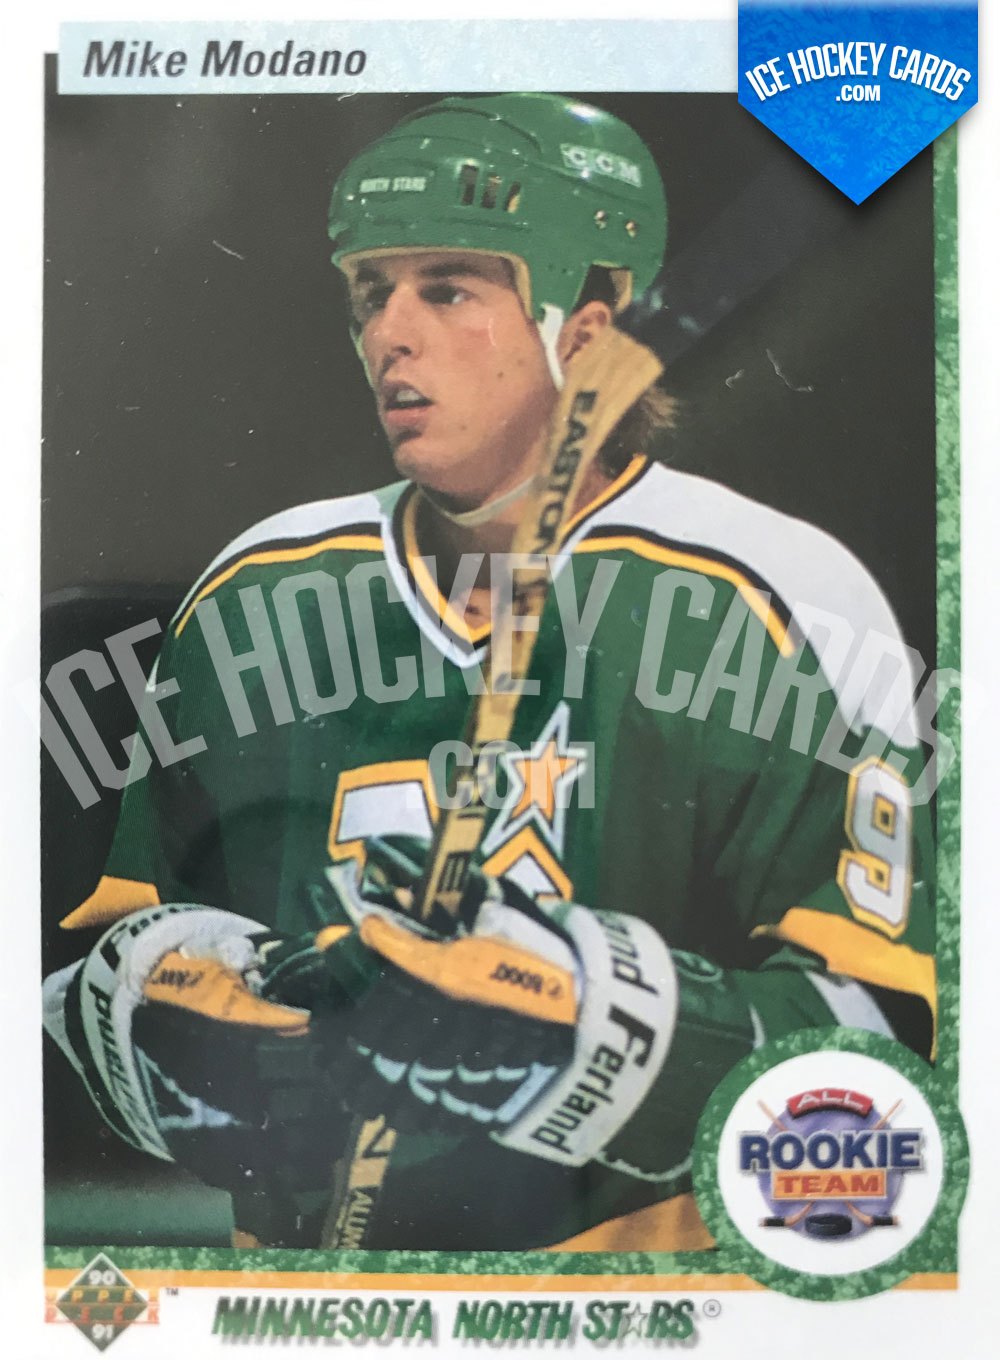 Neal Broten.  Stars hockey, Nhl hockey players, Minnesota north stars